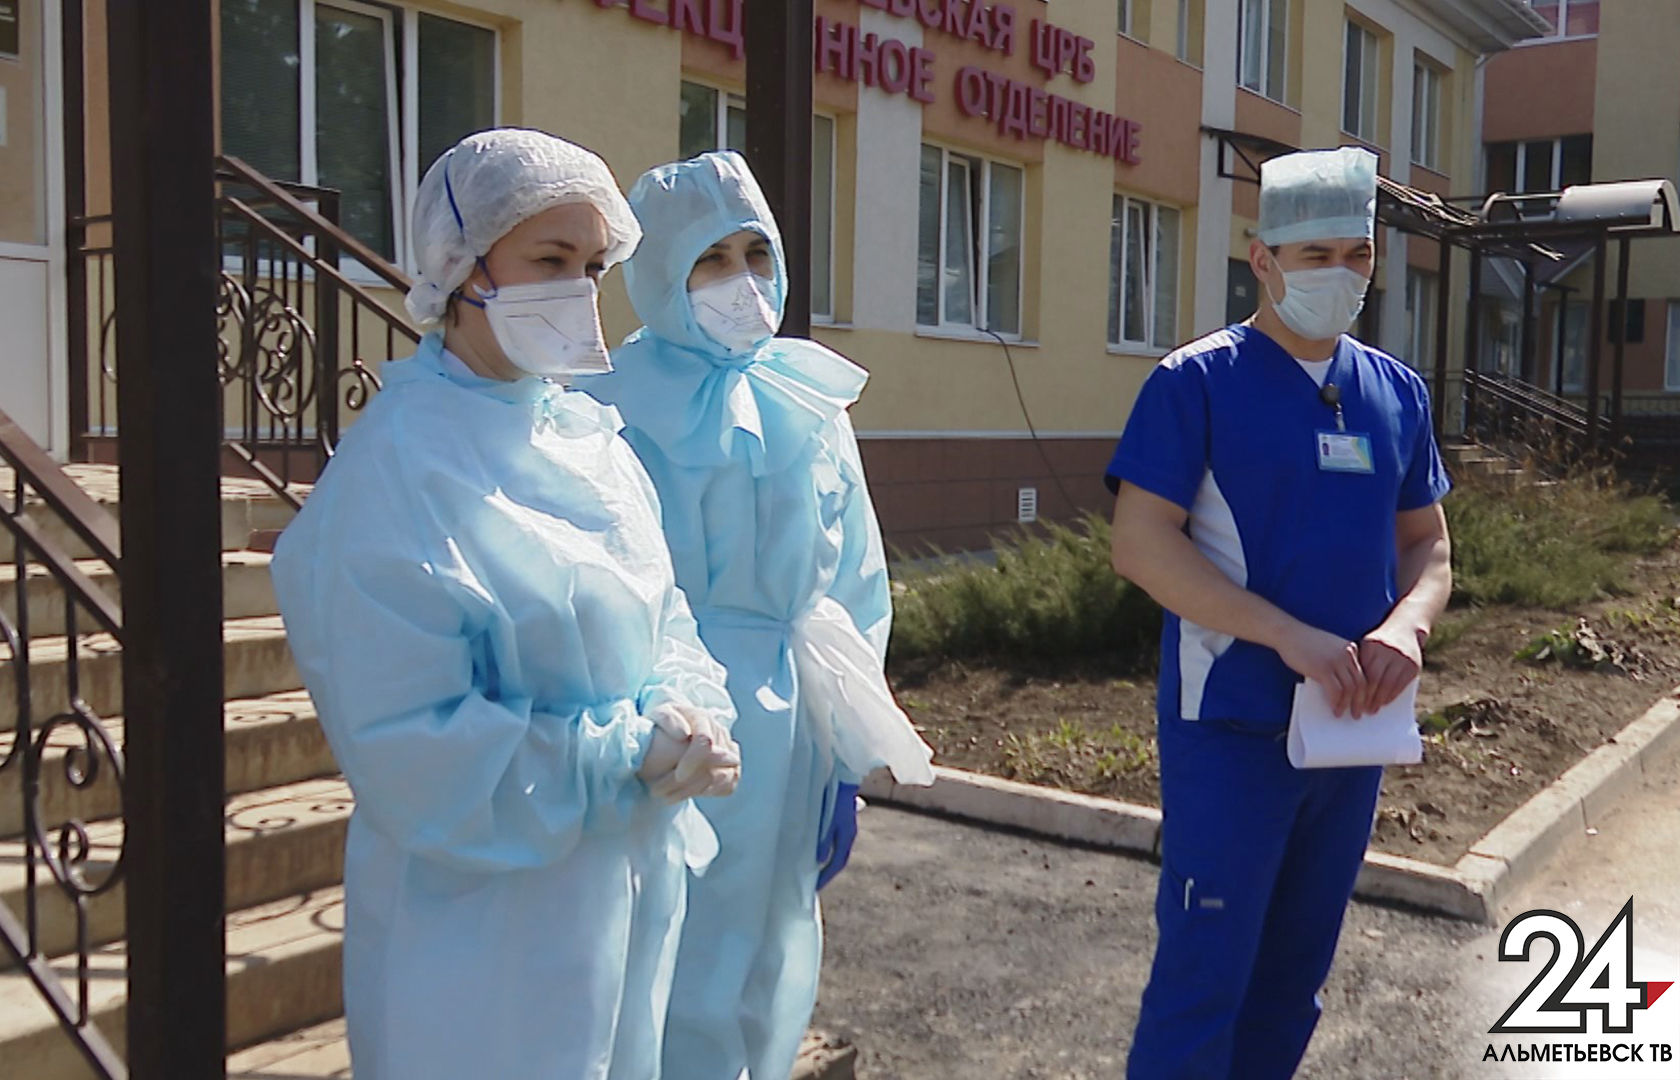 Медики, работавшие в пандемию, получили 13 млн рублей благодаря прокуратуре Татарстана